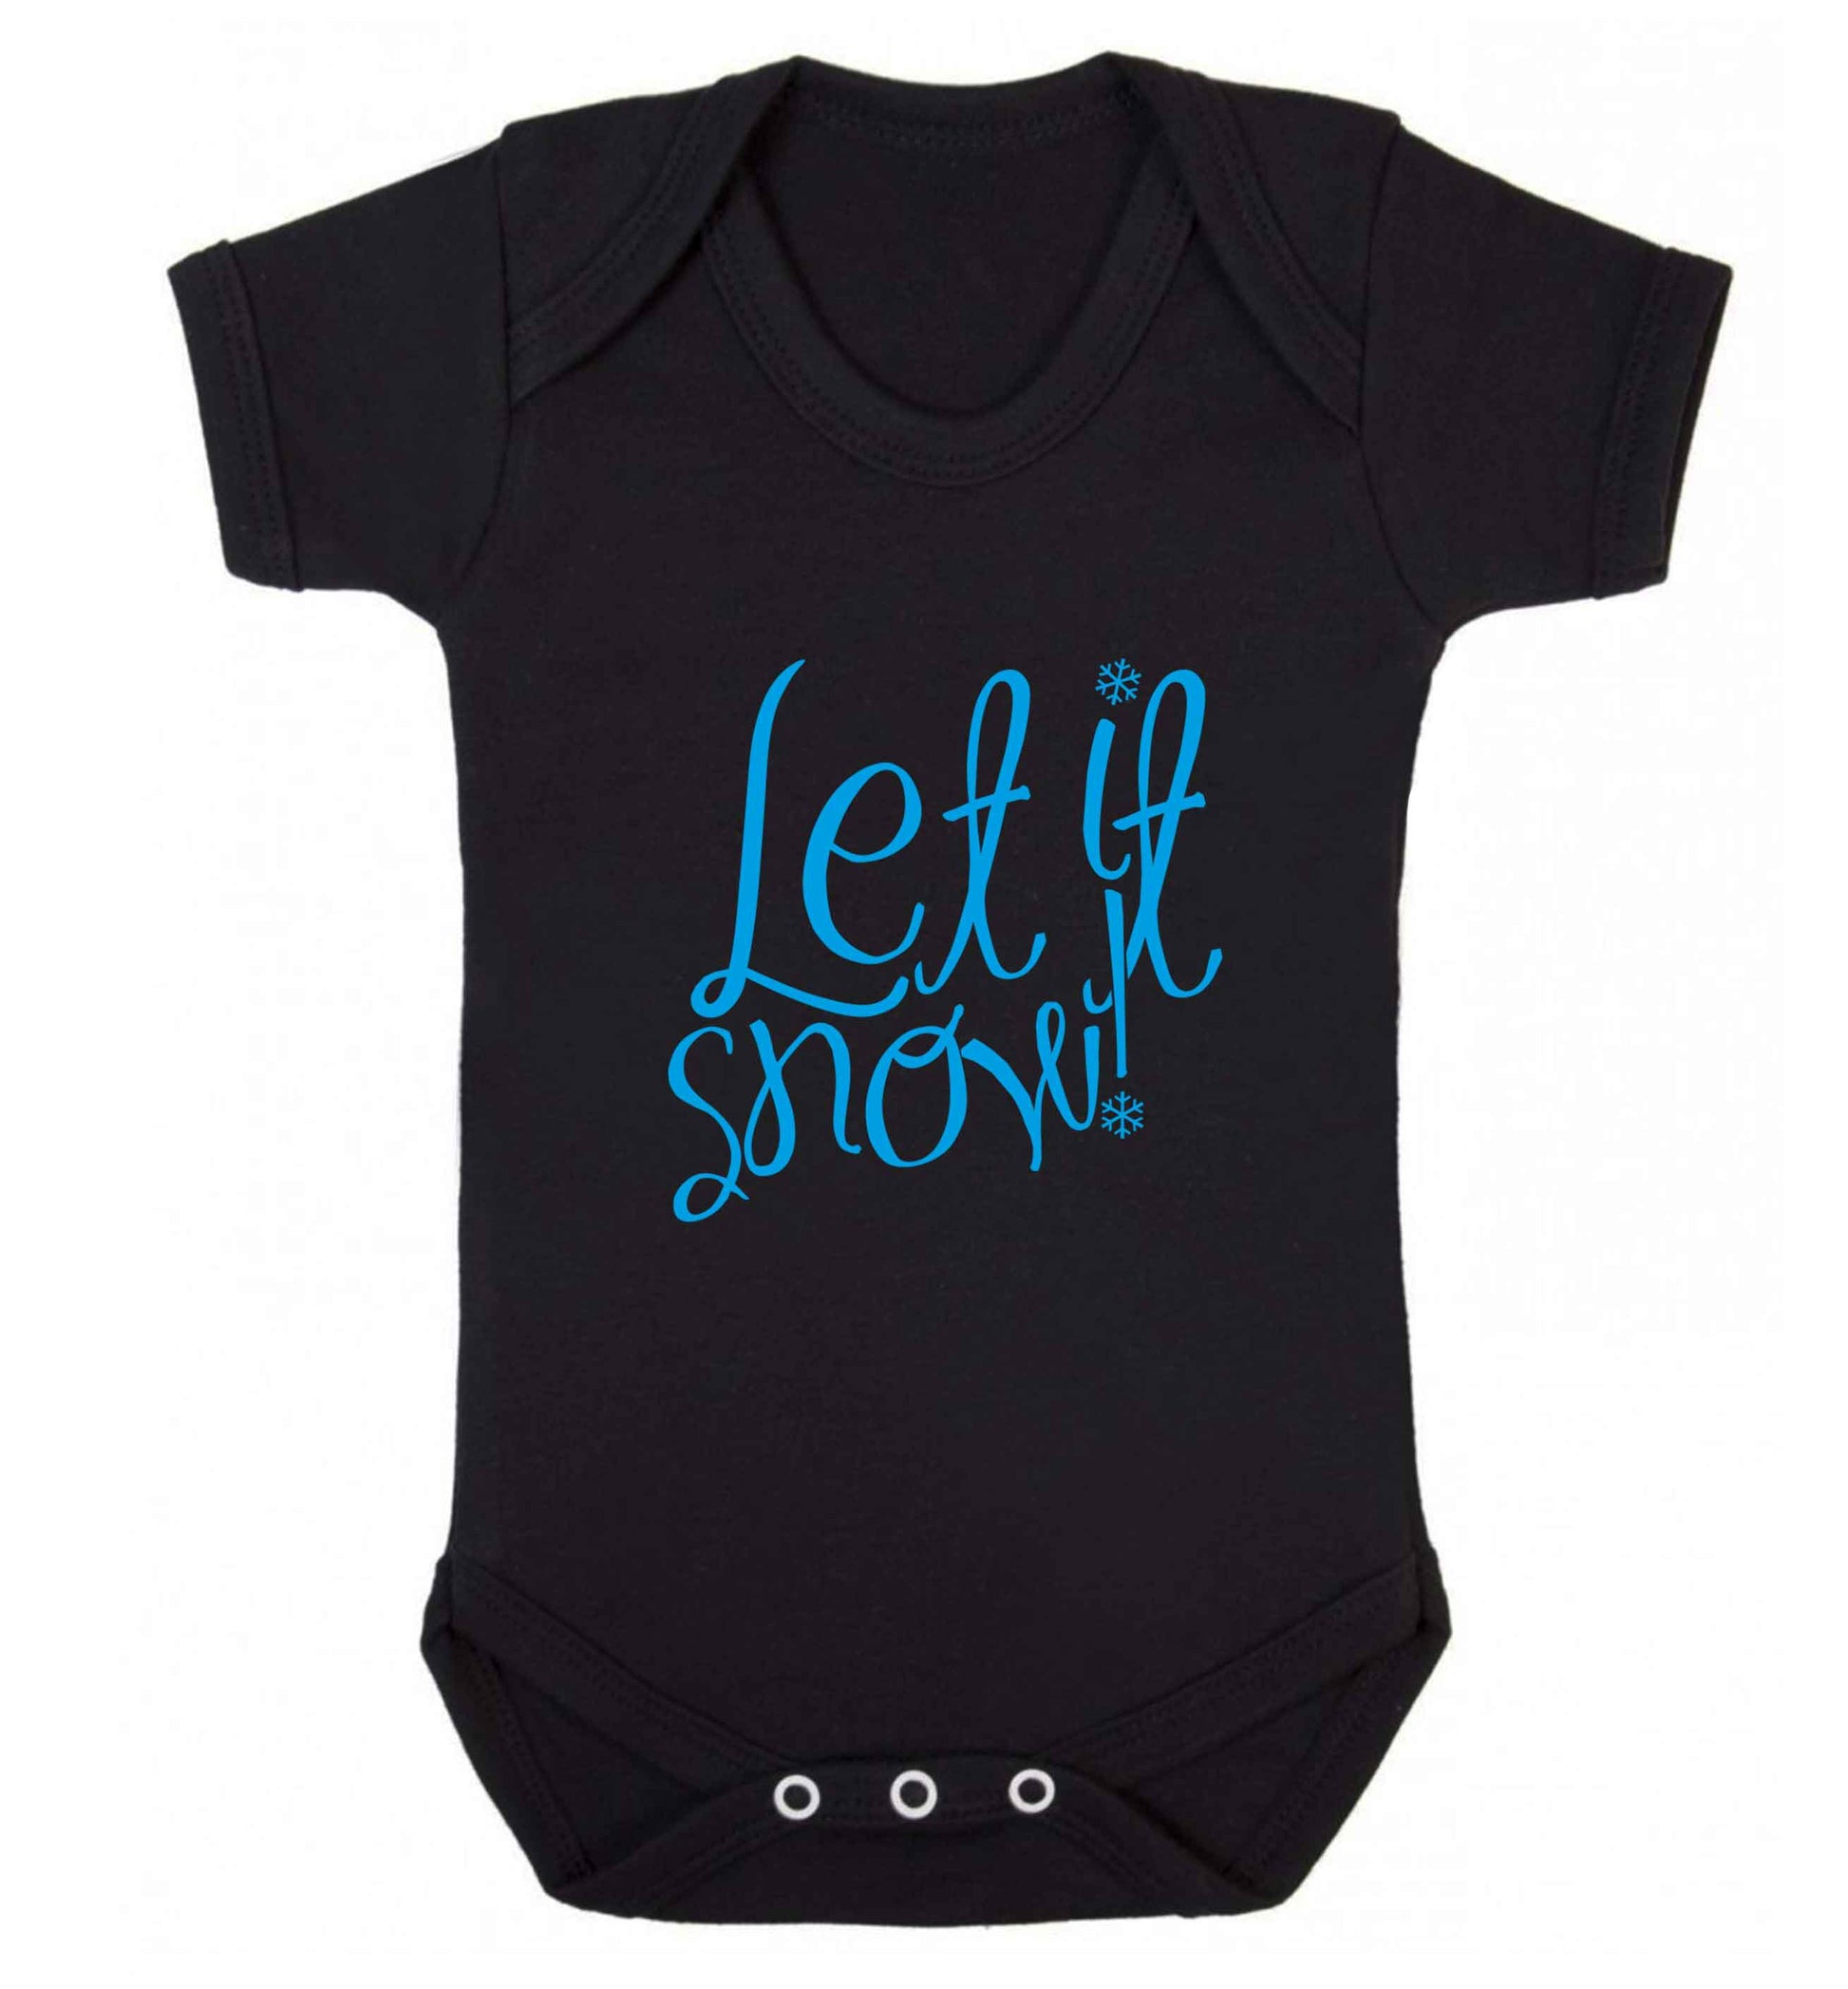 Let it snow baby vest black 18-24 months